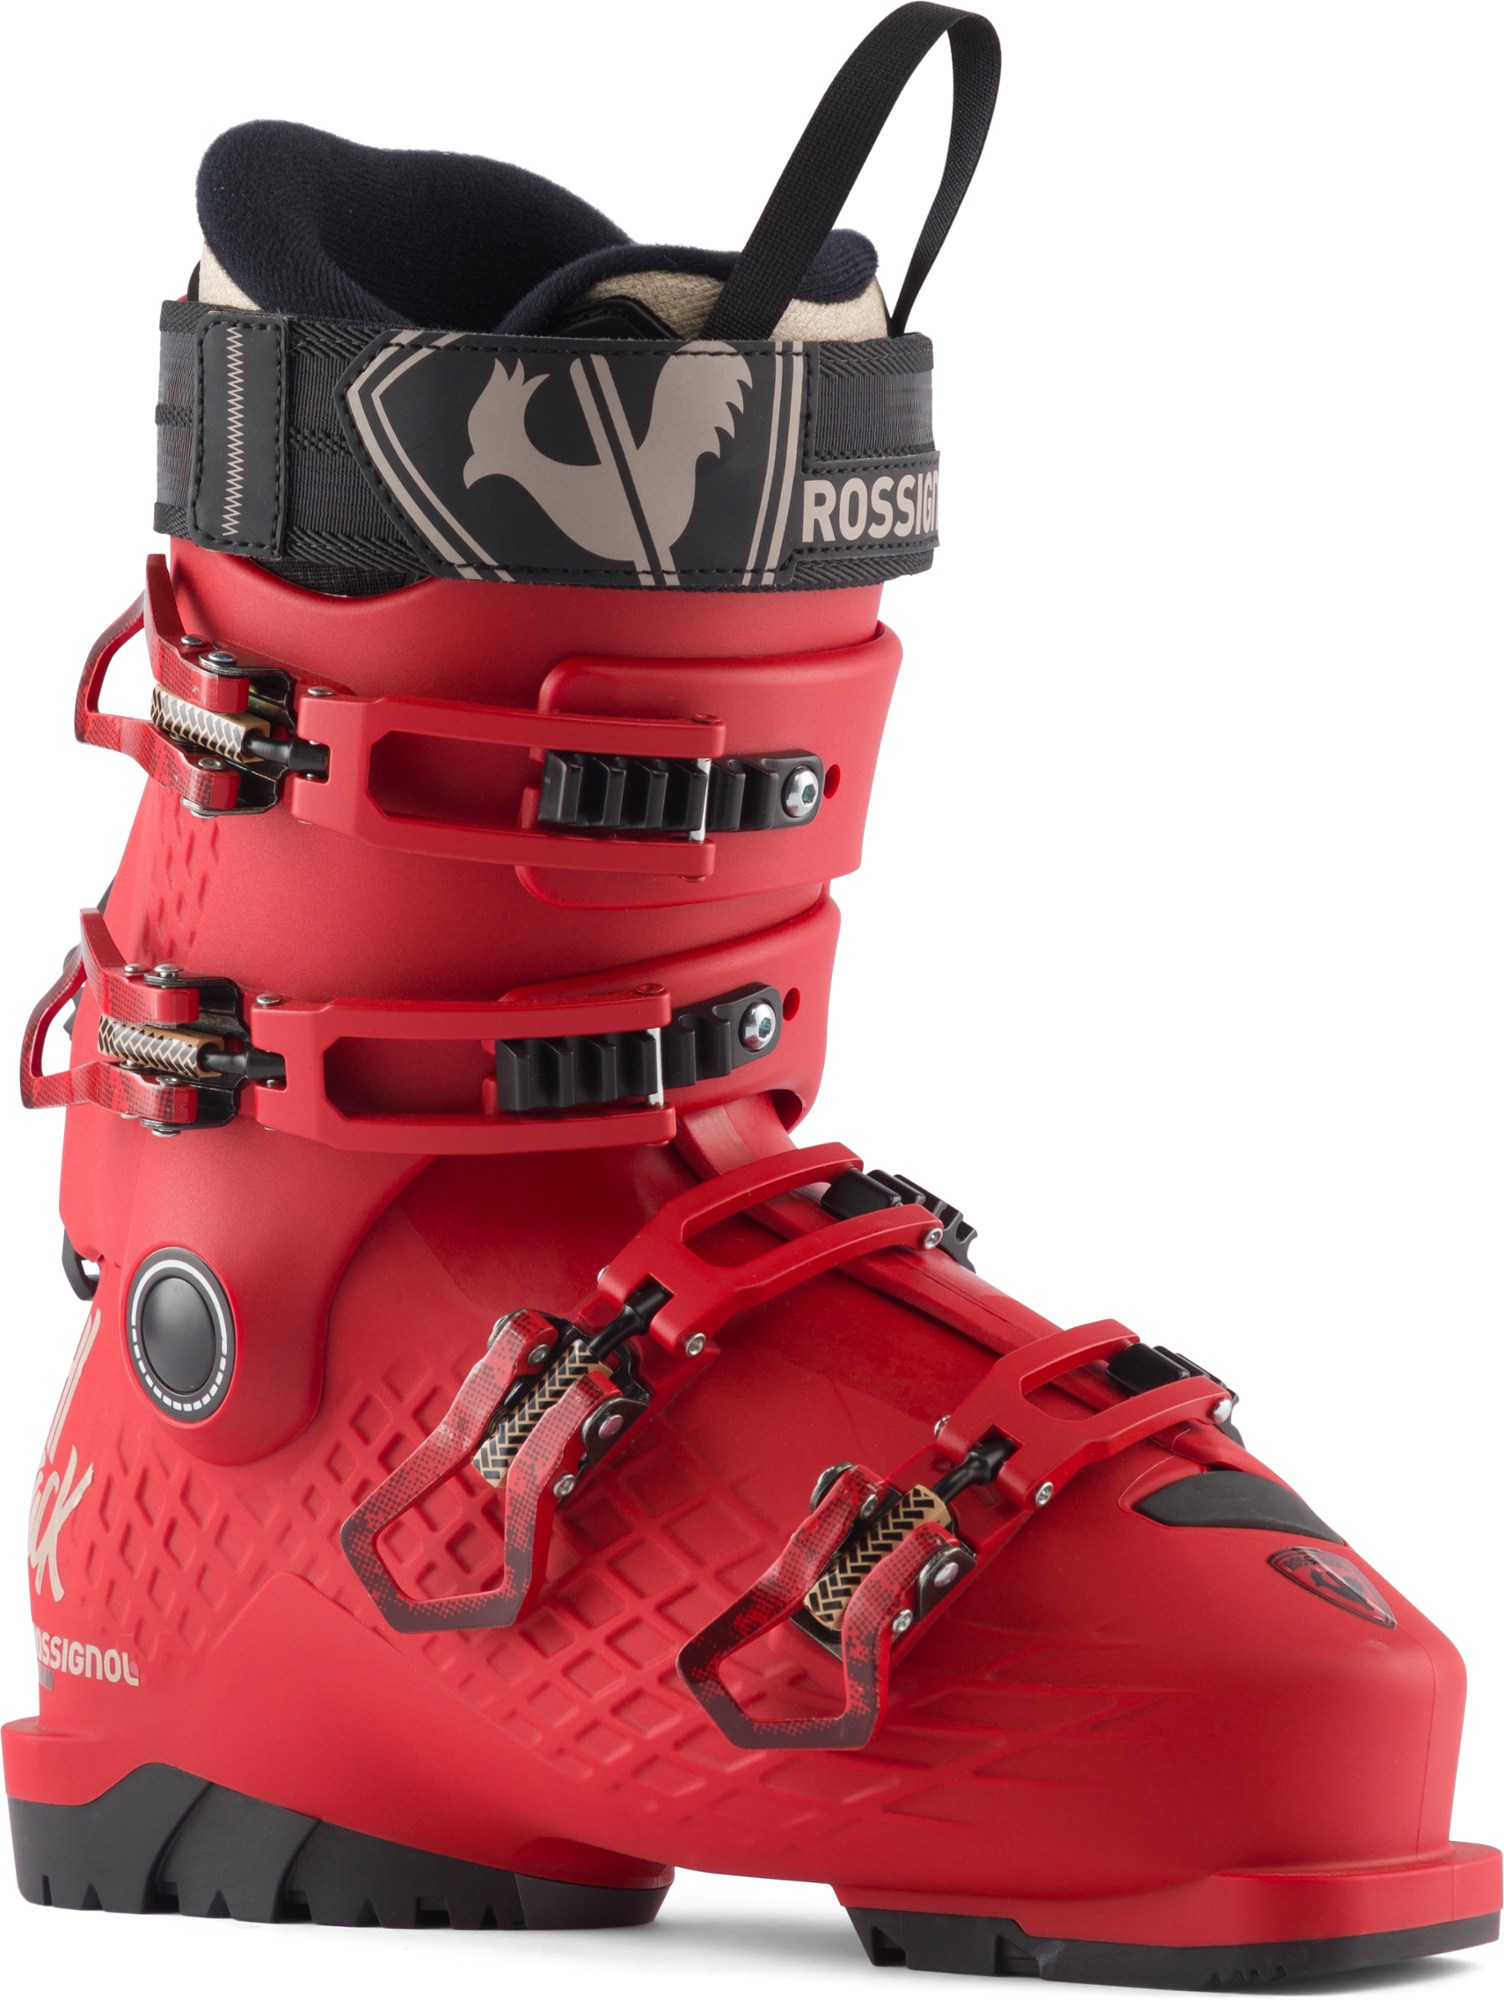 Лыжные ботинки Alltrack Jr 80 - Детские - 2023/2024 г. Rossignol, красный шорты хоккейные детские bauer x jr черный